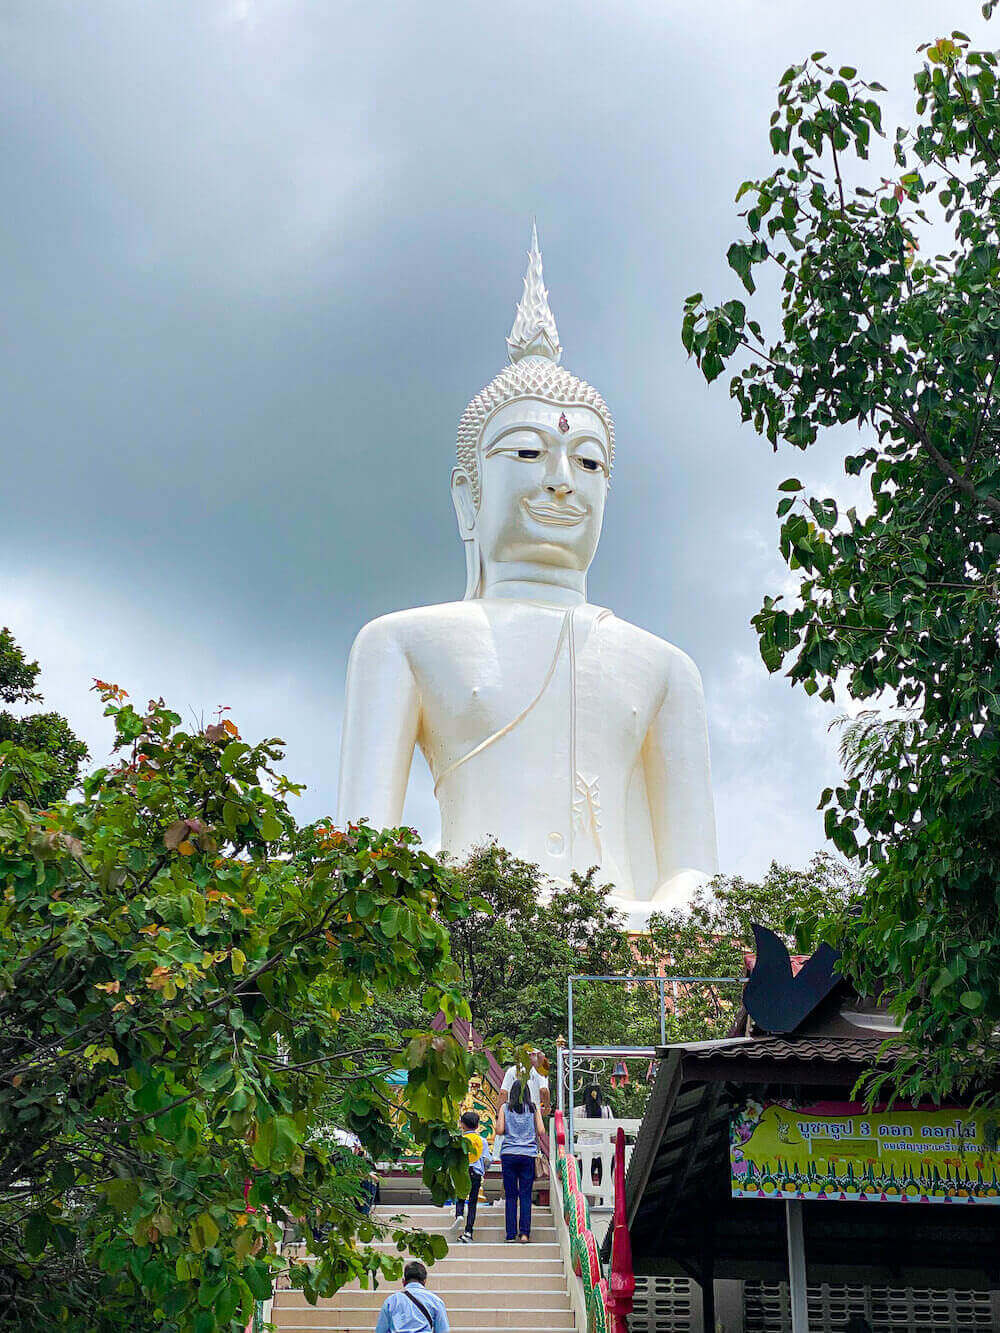 ワット・ローイ・プラ・プッタバート・プー・マノーロム（Wat Roi Phra Phutthabat Phu Manorom）の巨大仏像